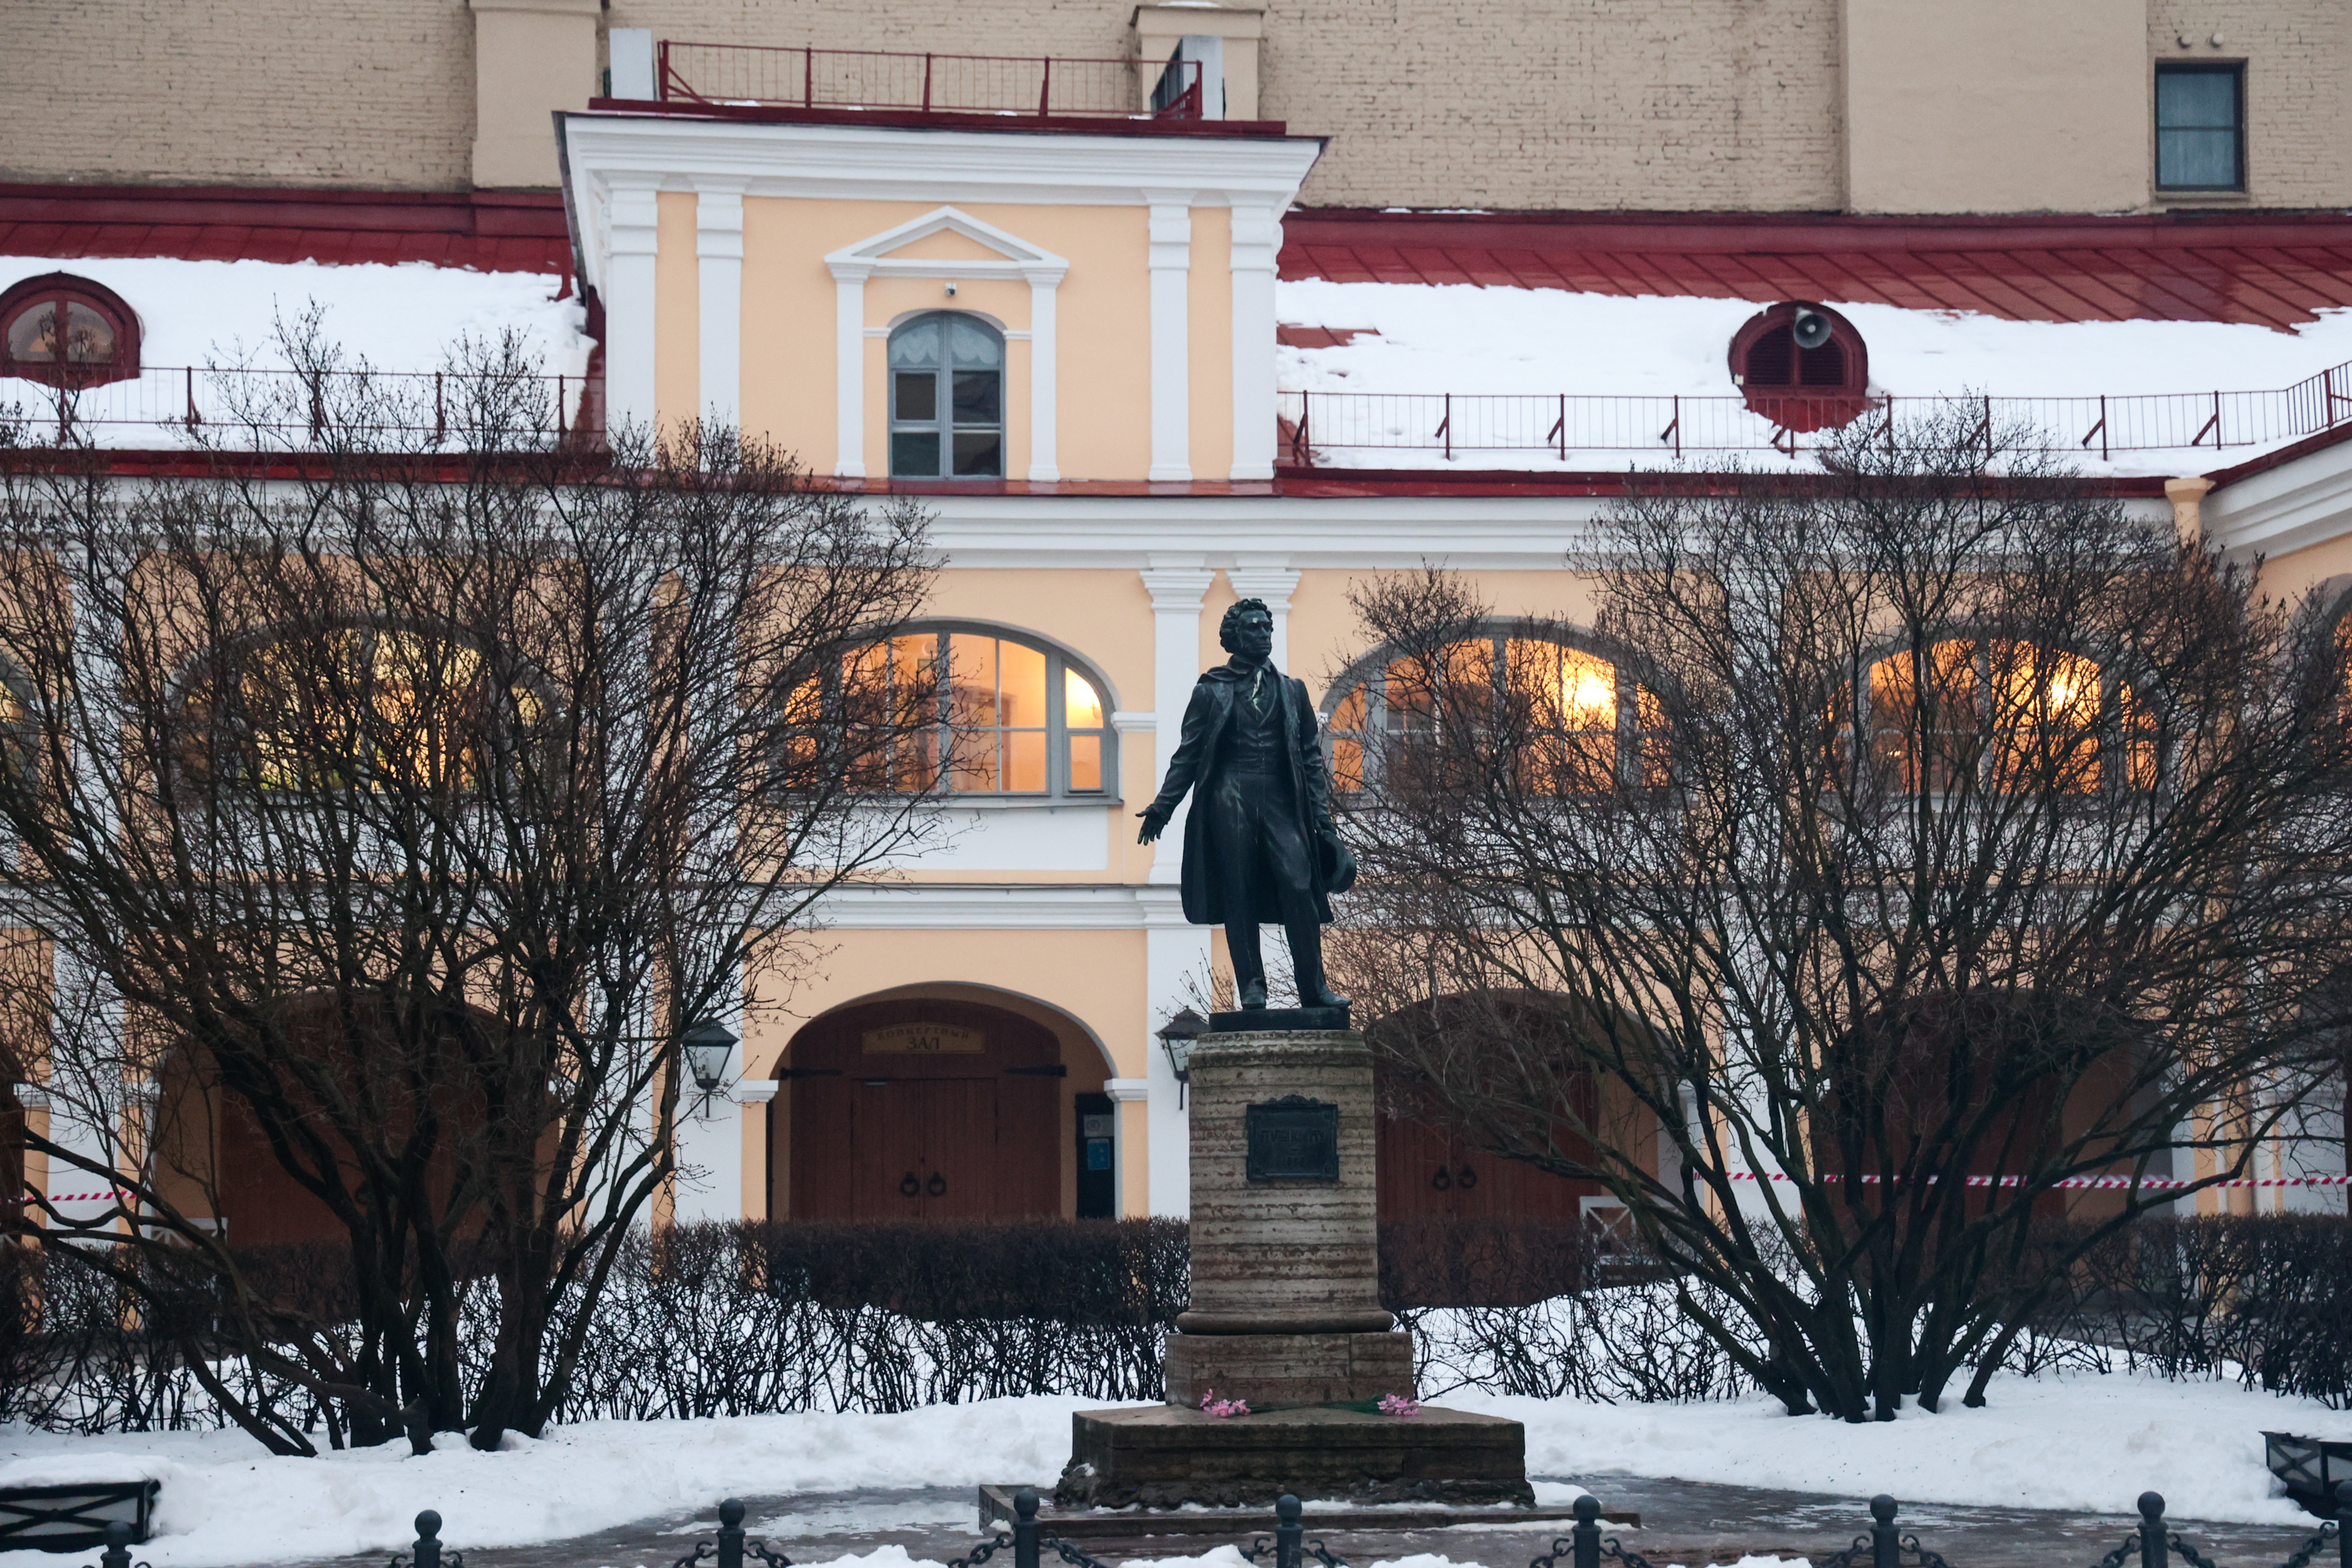 The Pushkin Apartment Museum